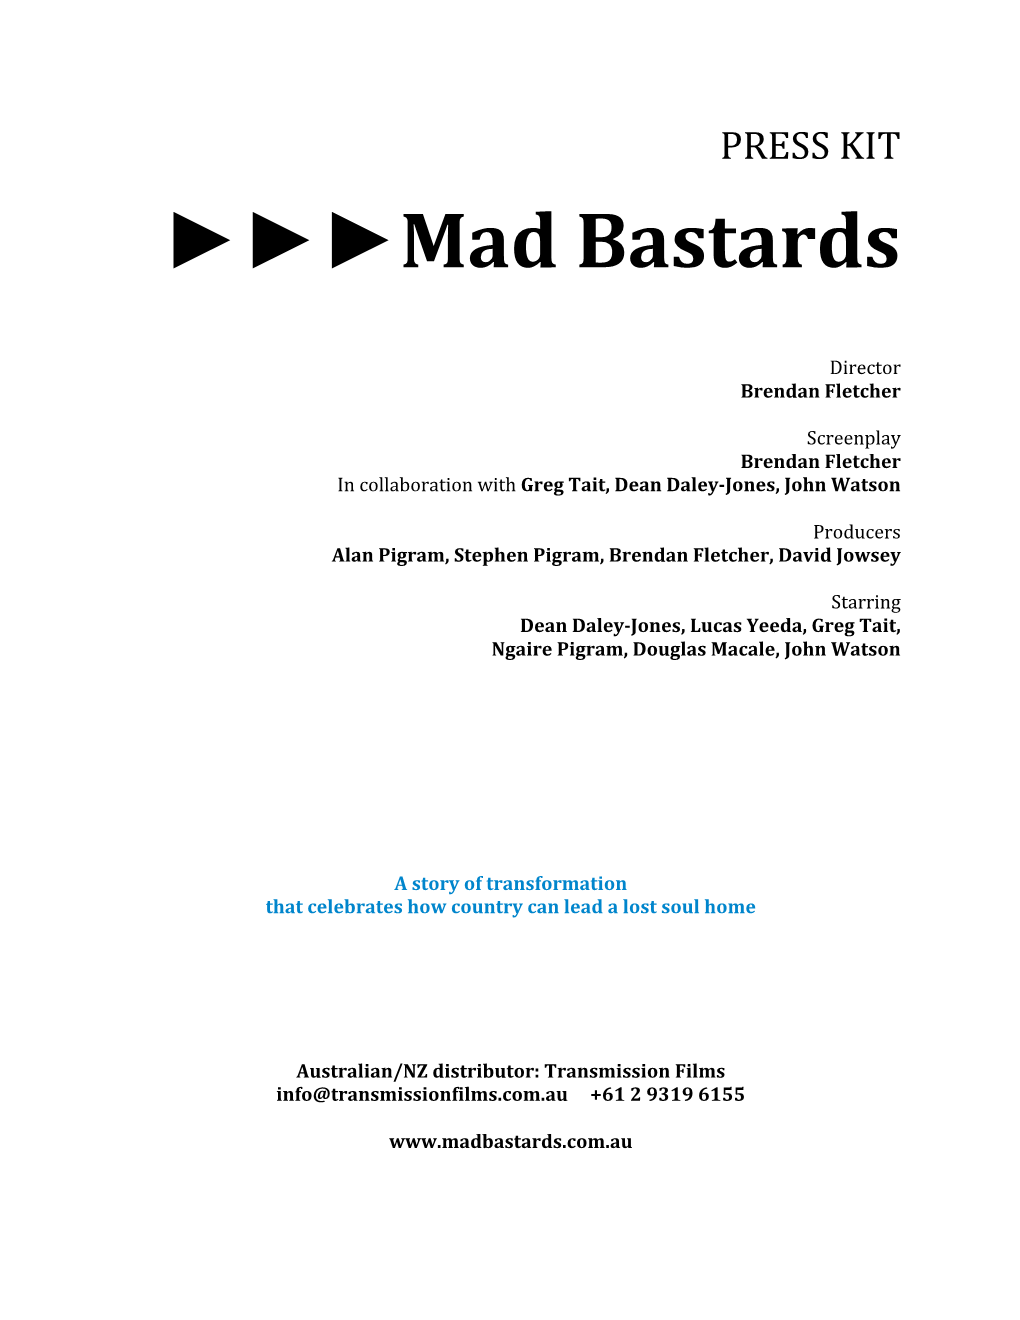 Mad Bastards Press Kit Final